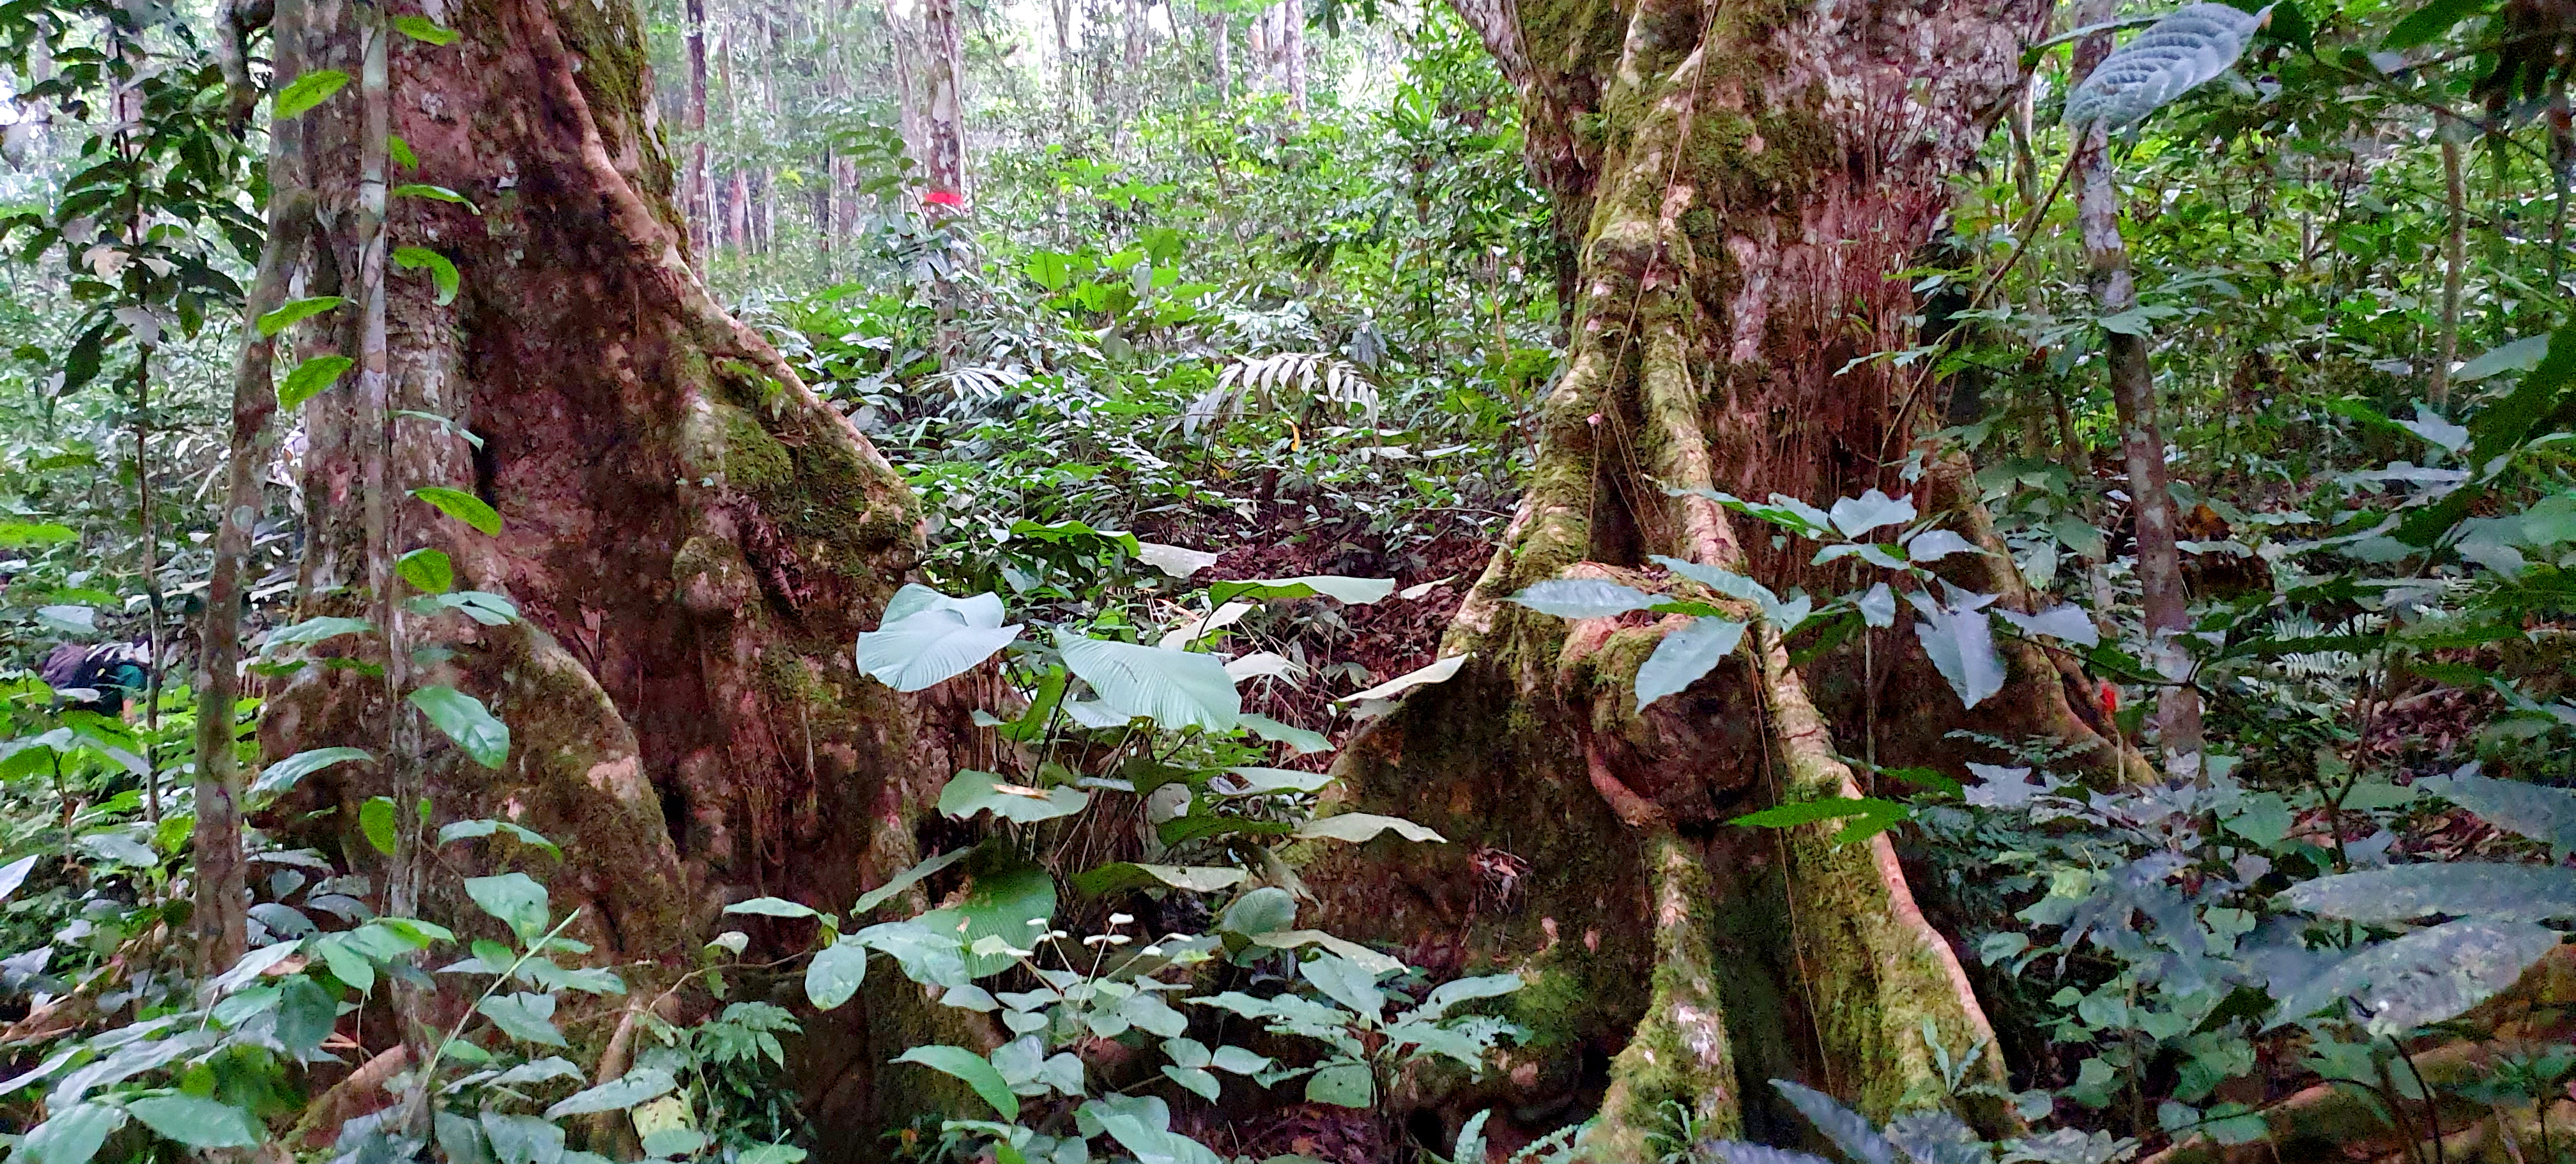 Lush forest in Gabon